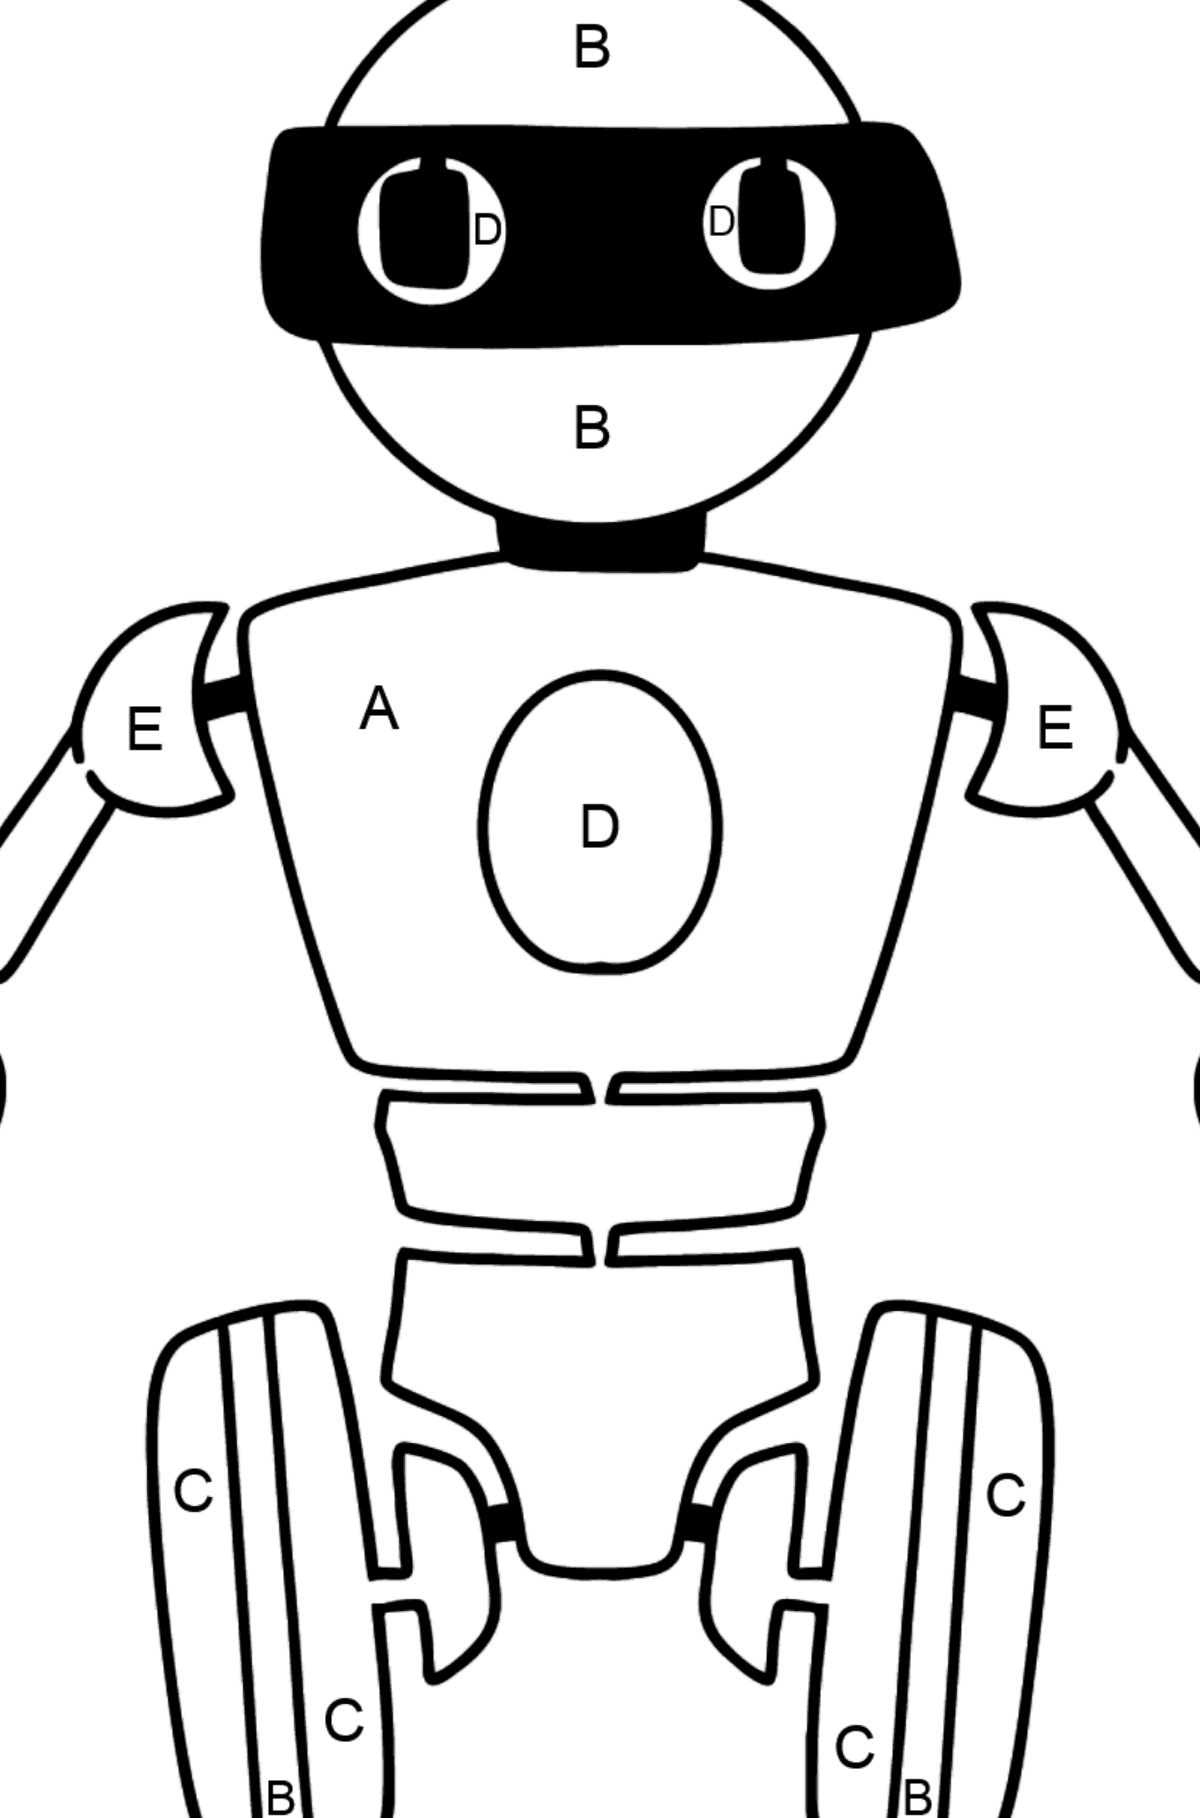 Coloriage - Robot de dessin animé - Coloriage par Lettres pour les Enfants